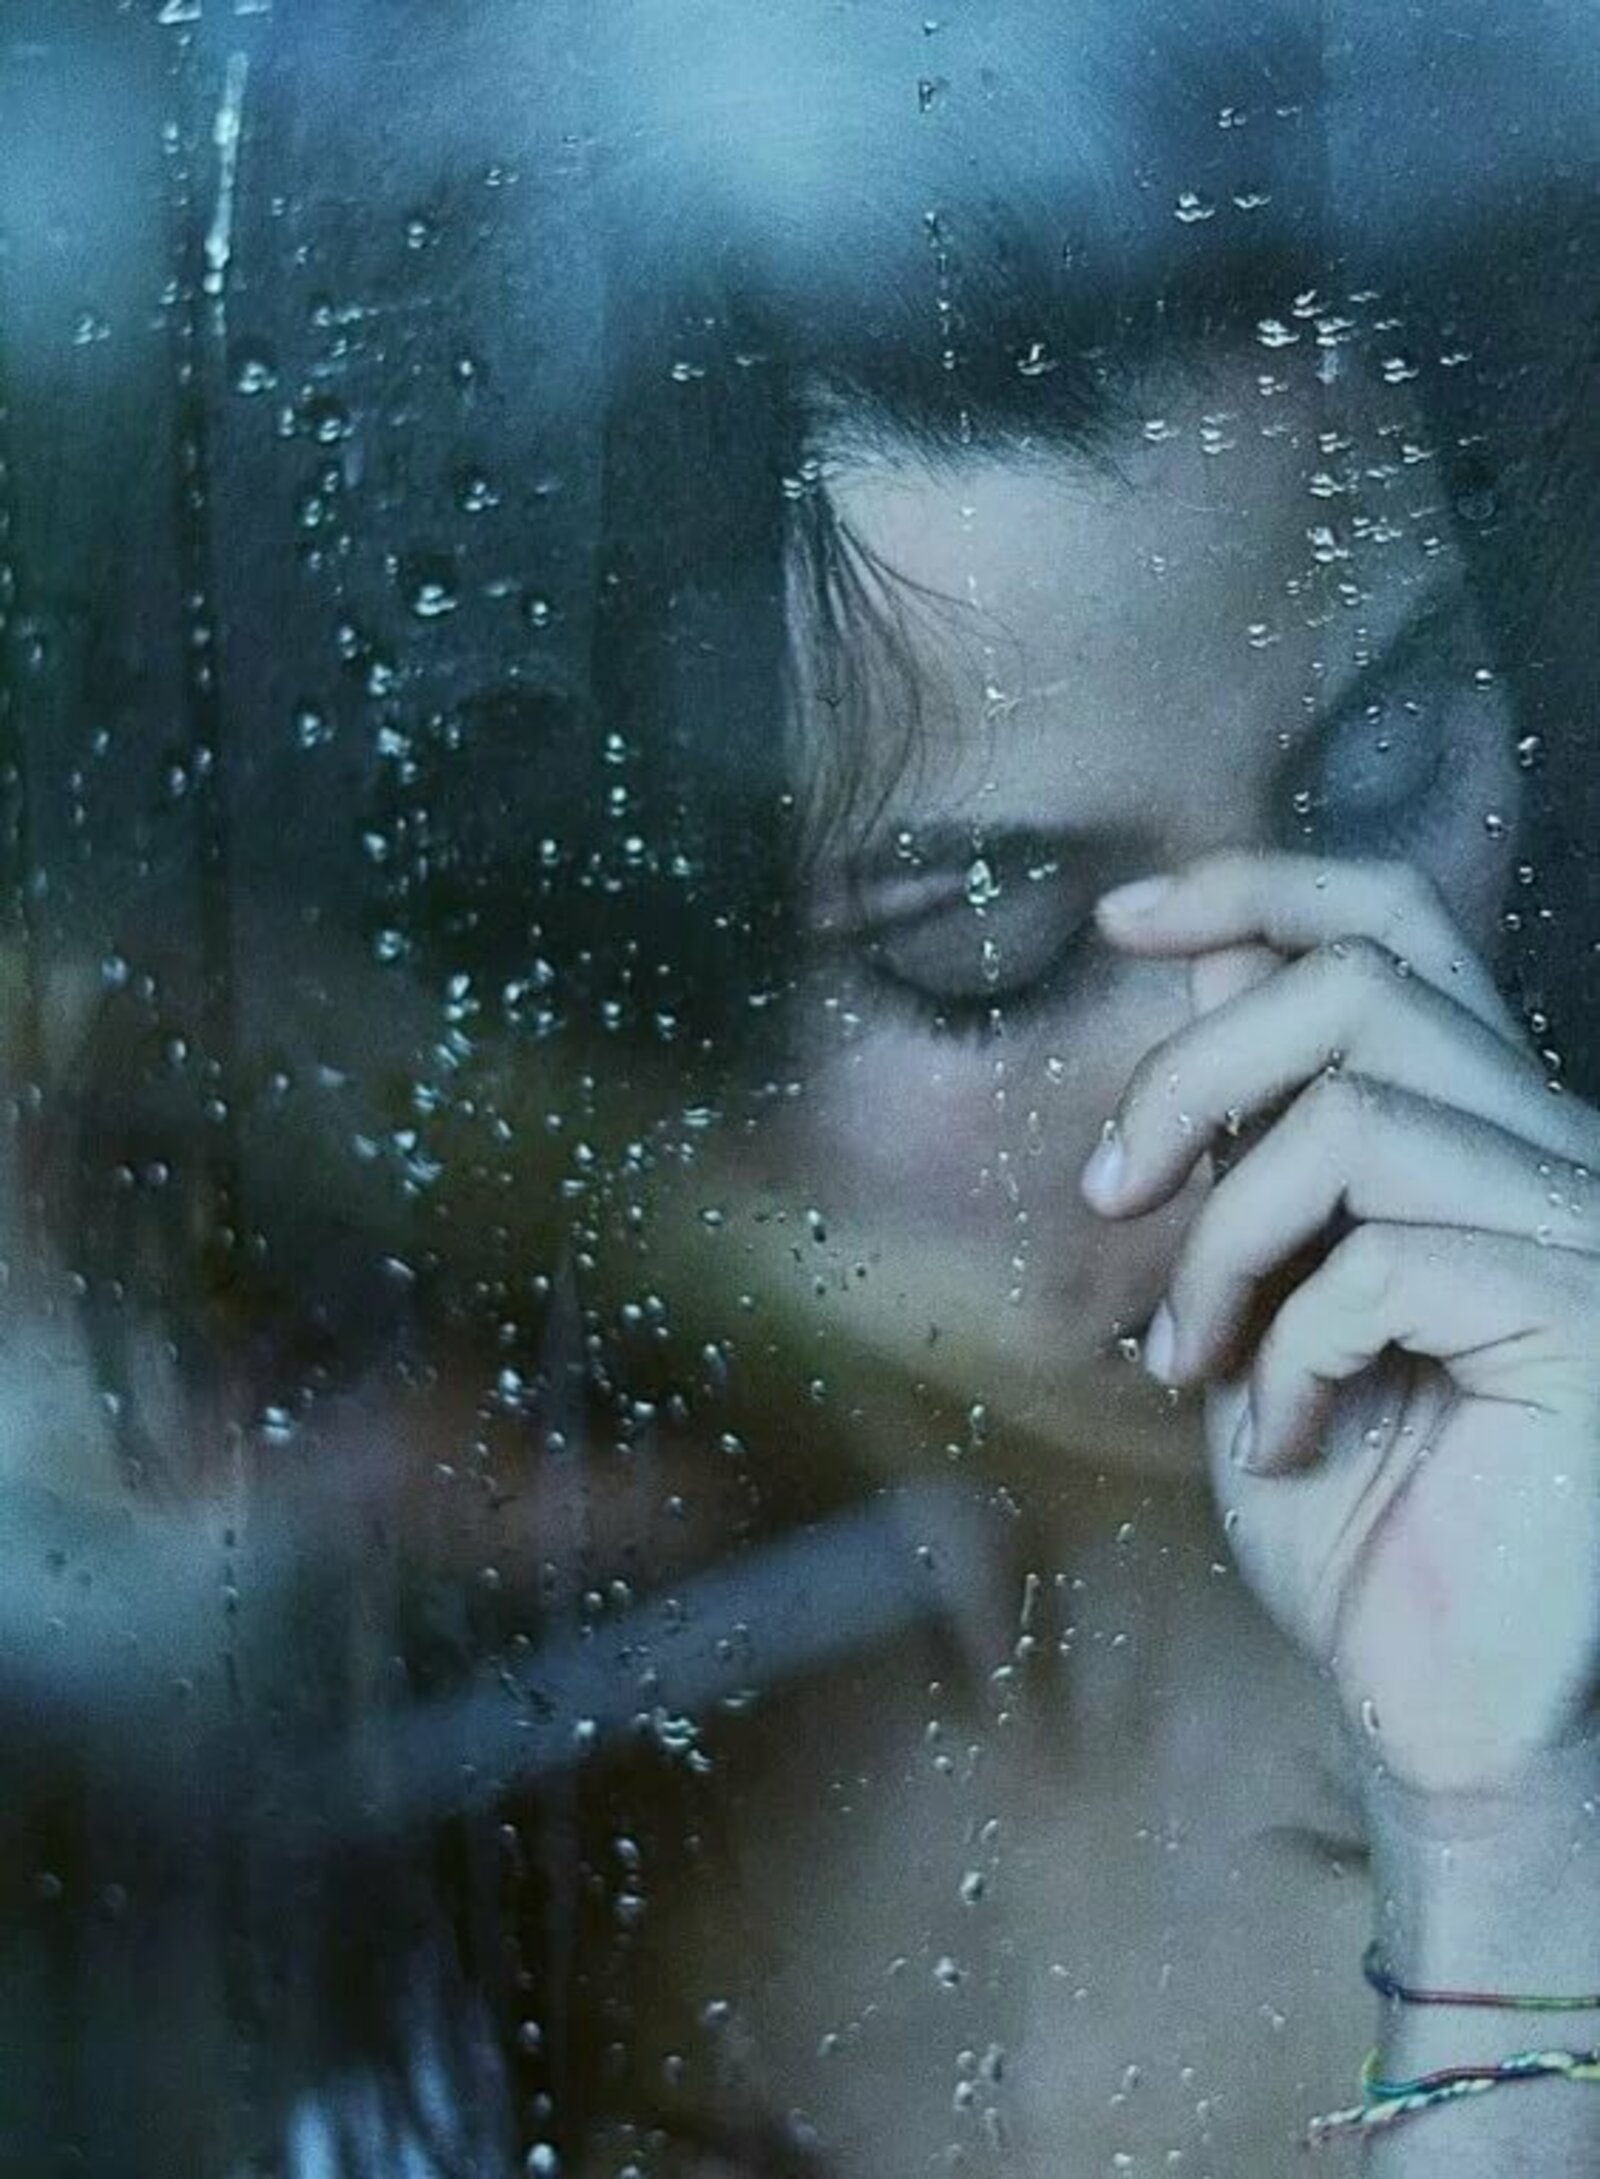 Плачешь у окна по нему скучаешь. Девушка у окна грусть. Девушка дождь грусть. Женщина у окна дождь. Девушка у окна дождь.